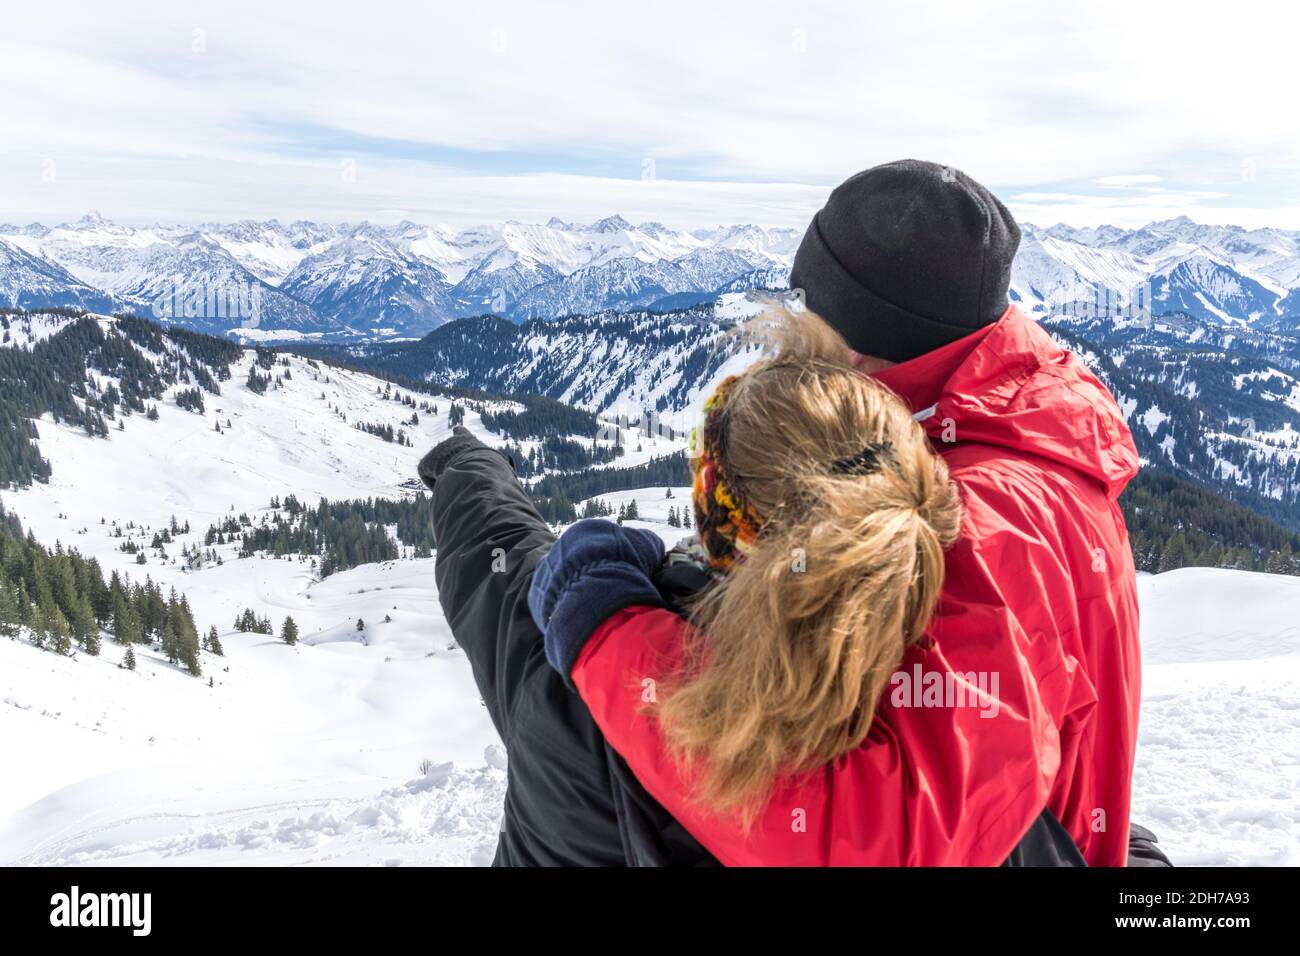 La pareja mayor está haciendo senderismo en la nieve alpina invierno montañas disfrutando de vista panorámica y apuntando con el dedo a los picos de montaña. Allgau, Baviera, Alemania. Foto de stock